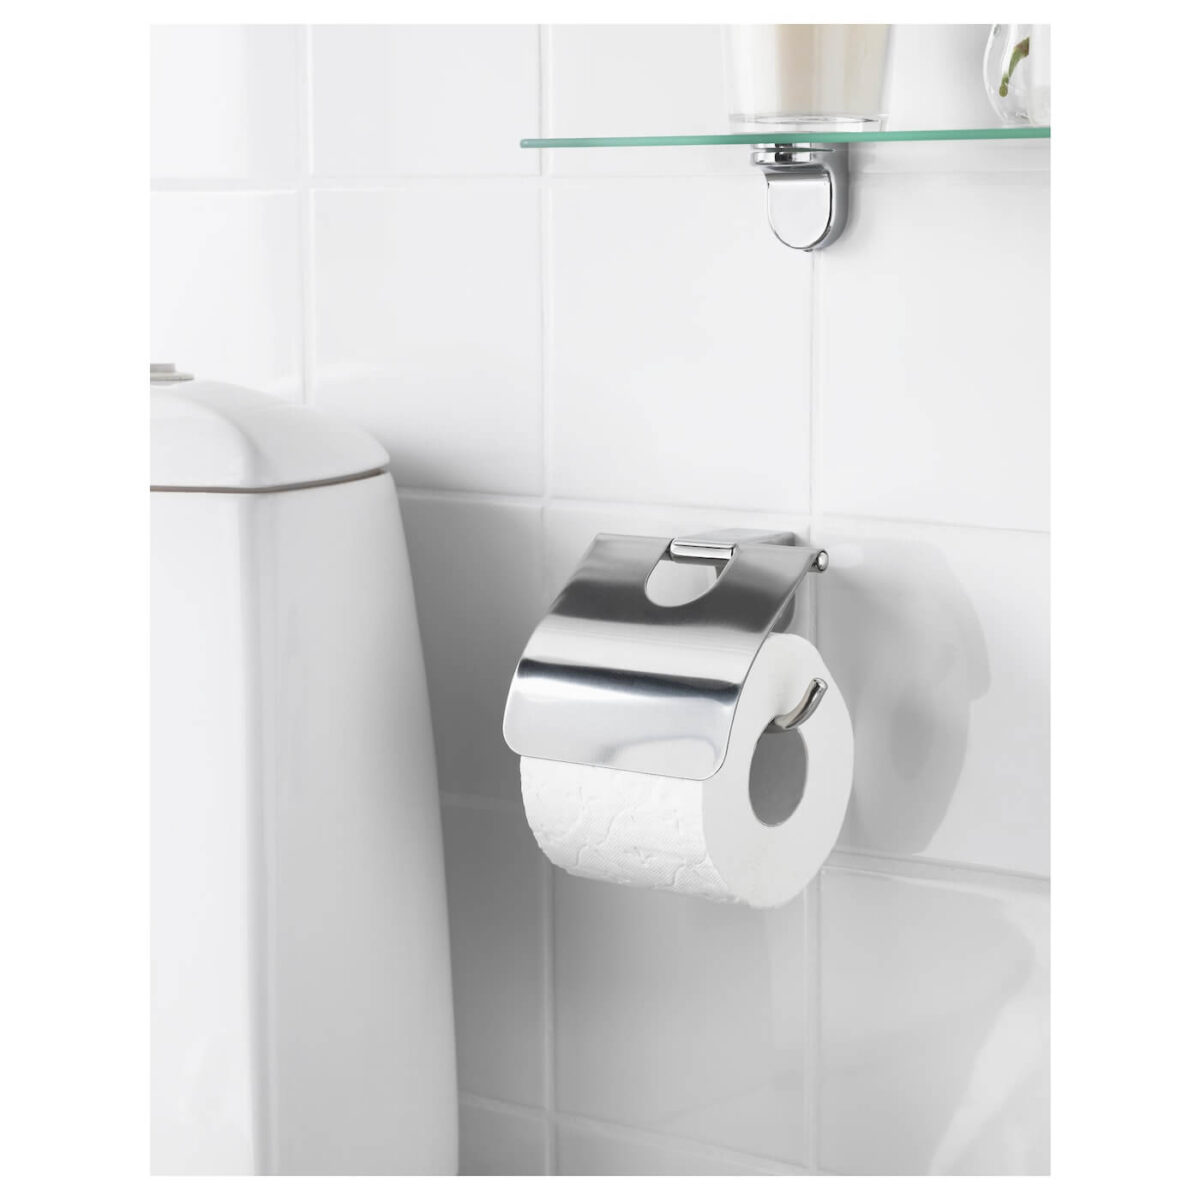 نگهدارنده دستمال توالت ایکیا مدل Kalkgrund